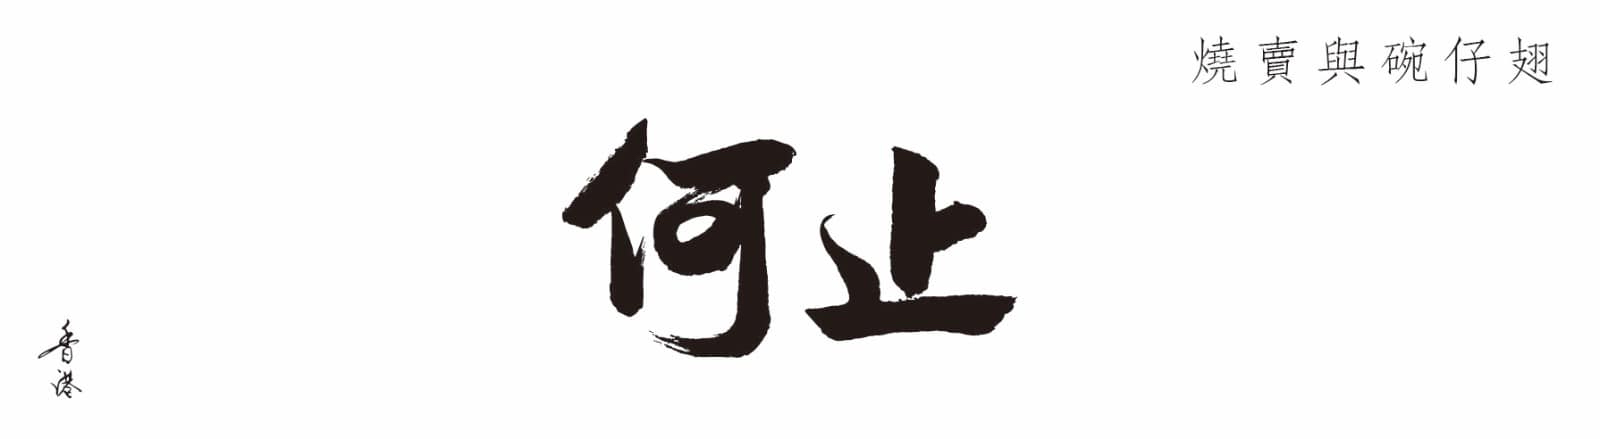 hoji_logo.jpg